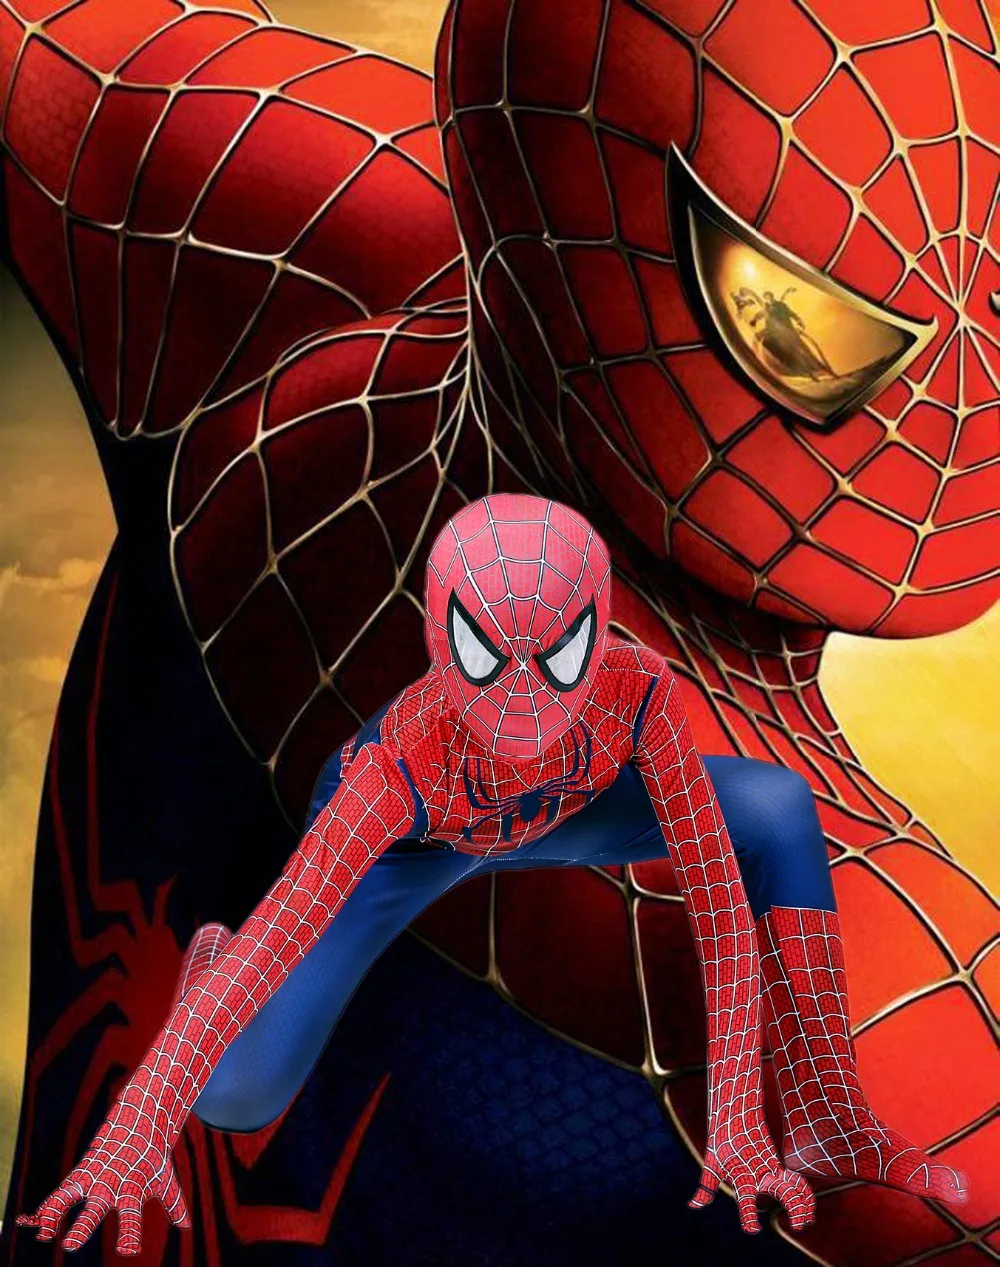 Новинка; костюм с 3D-принтом «Человек-паук» для взрослых и детей; Реми Тони; костюм «спайдербой»; цельнокроеные колготки; одежда для ролевых игр